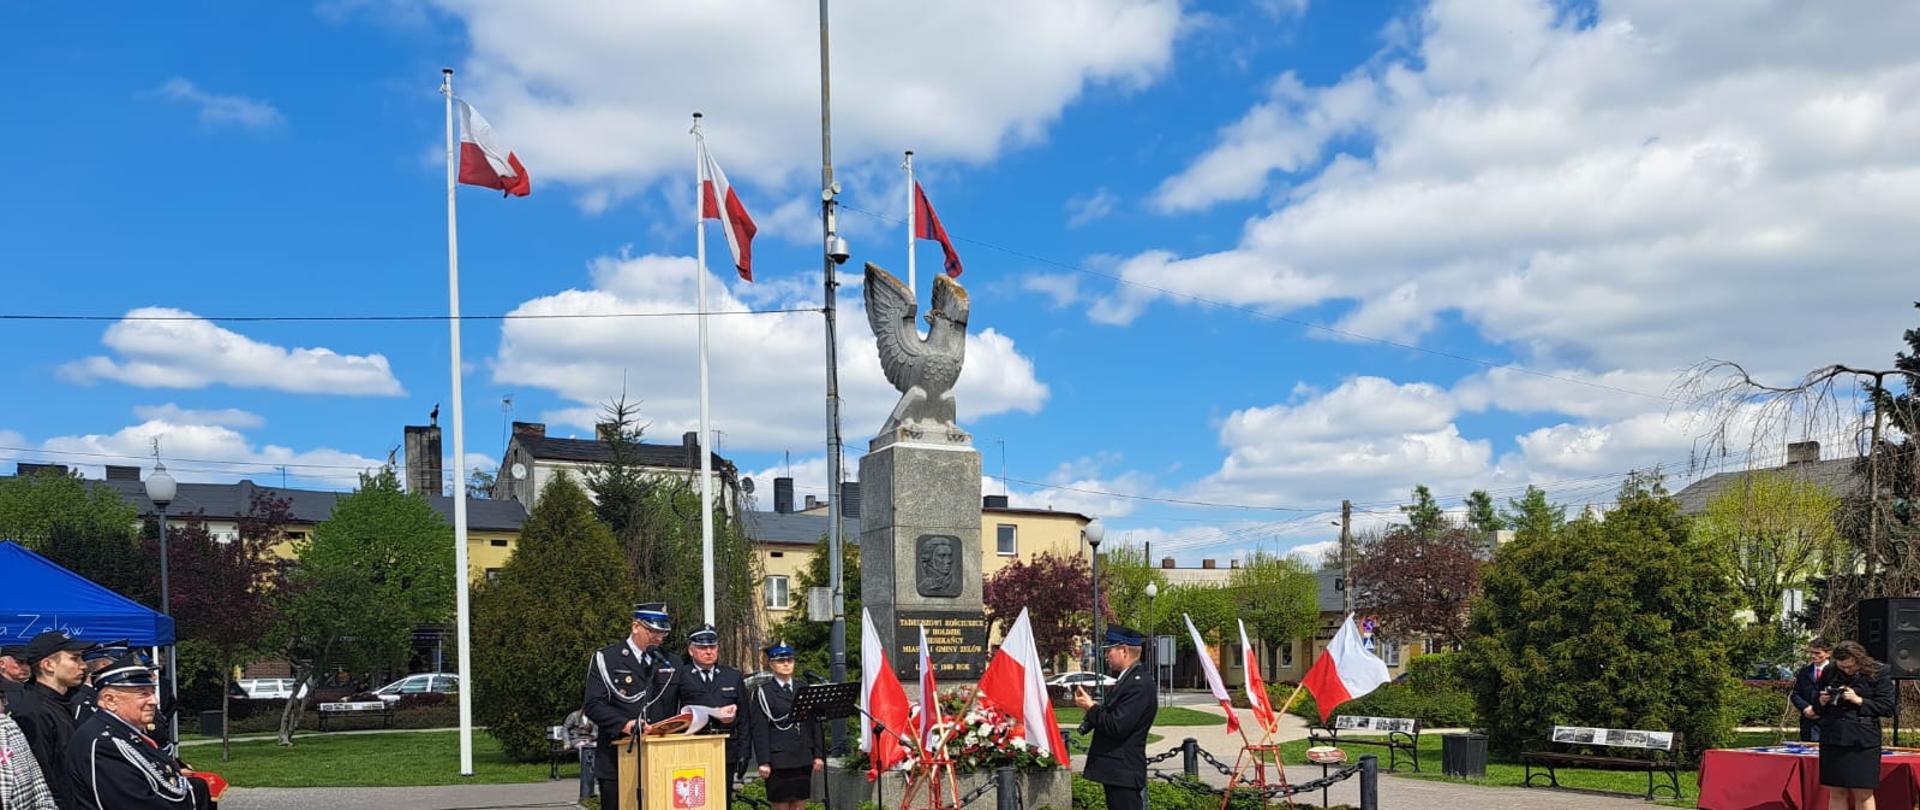 na zdjęciu widzimy pomnik i flagi Polski oraz prowadzącego uroczystość strażaka obok trzech strażaków w ubraniach wyjściowych po lewej stronie widoczni zaproszeni goście w tle drzewa i budynki